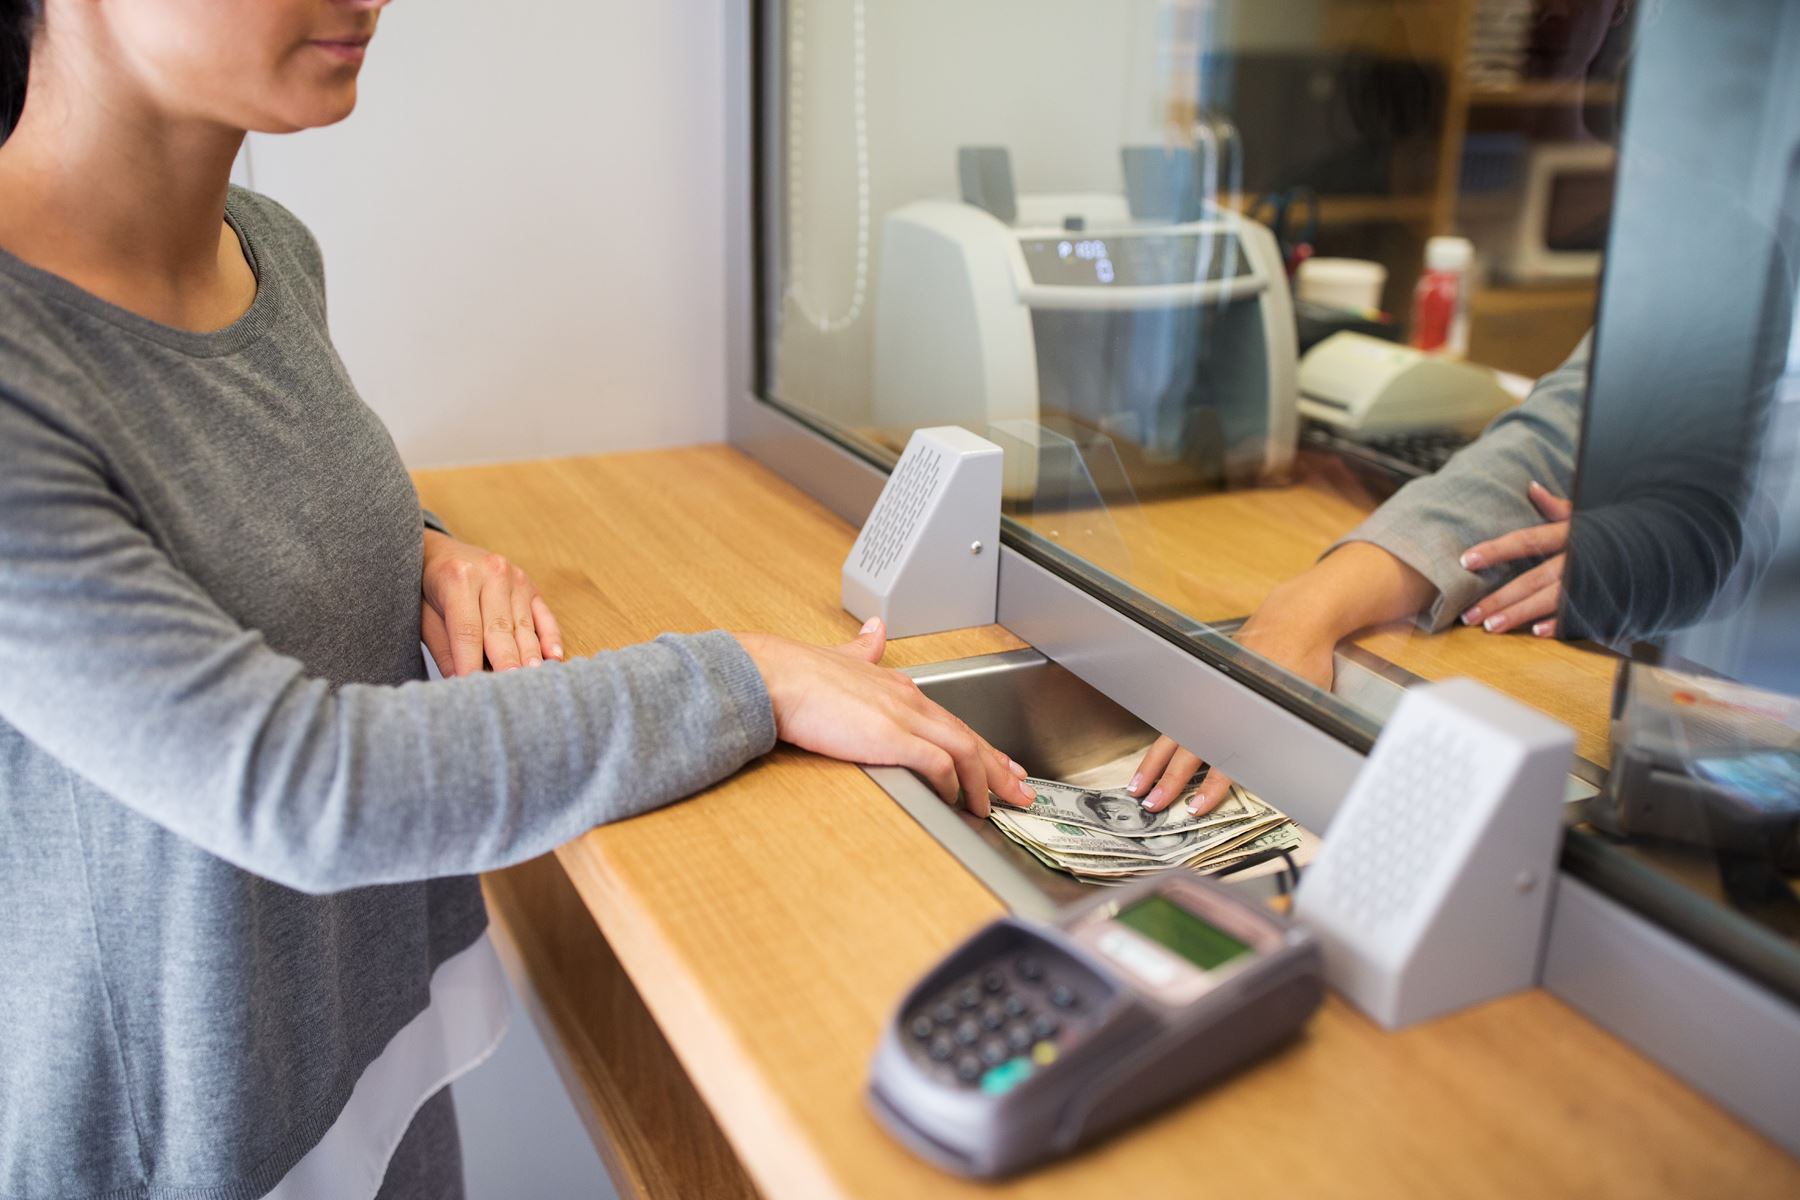 Bank teller handing money to customer